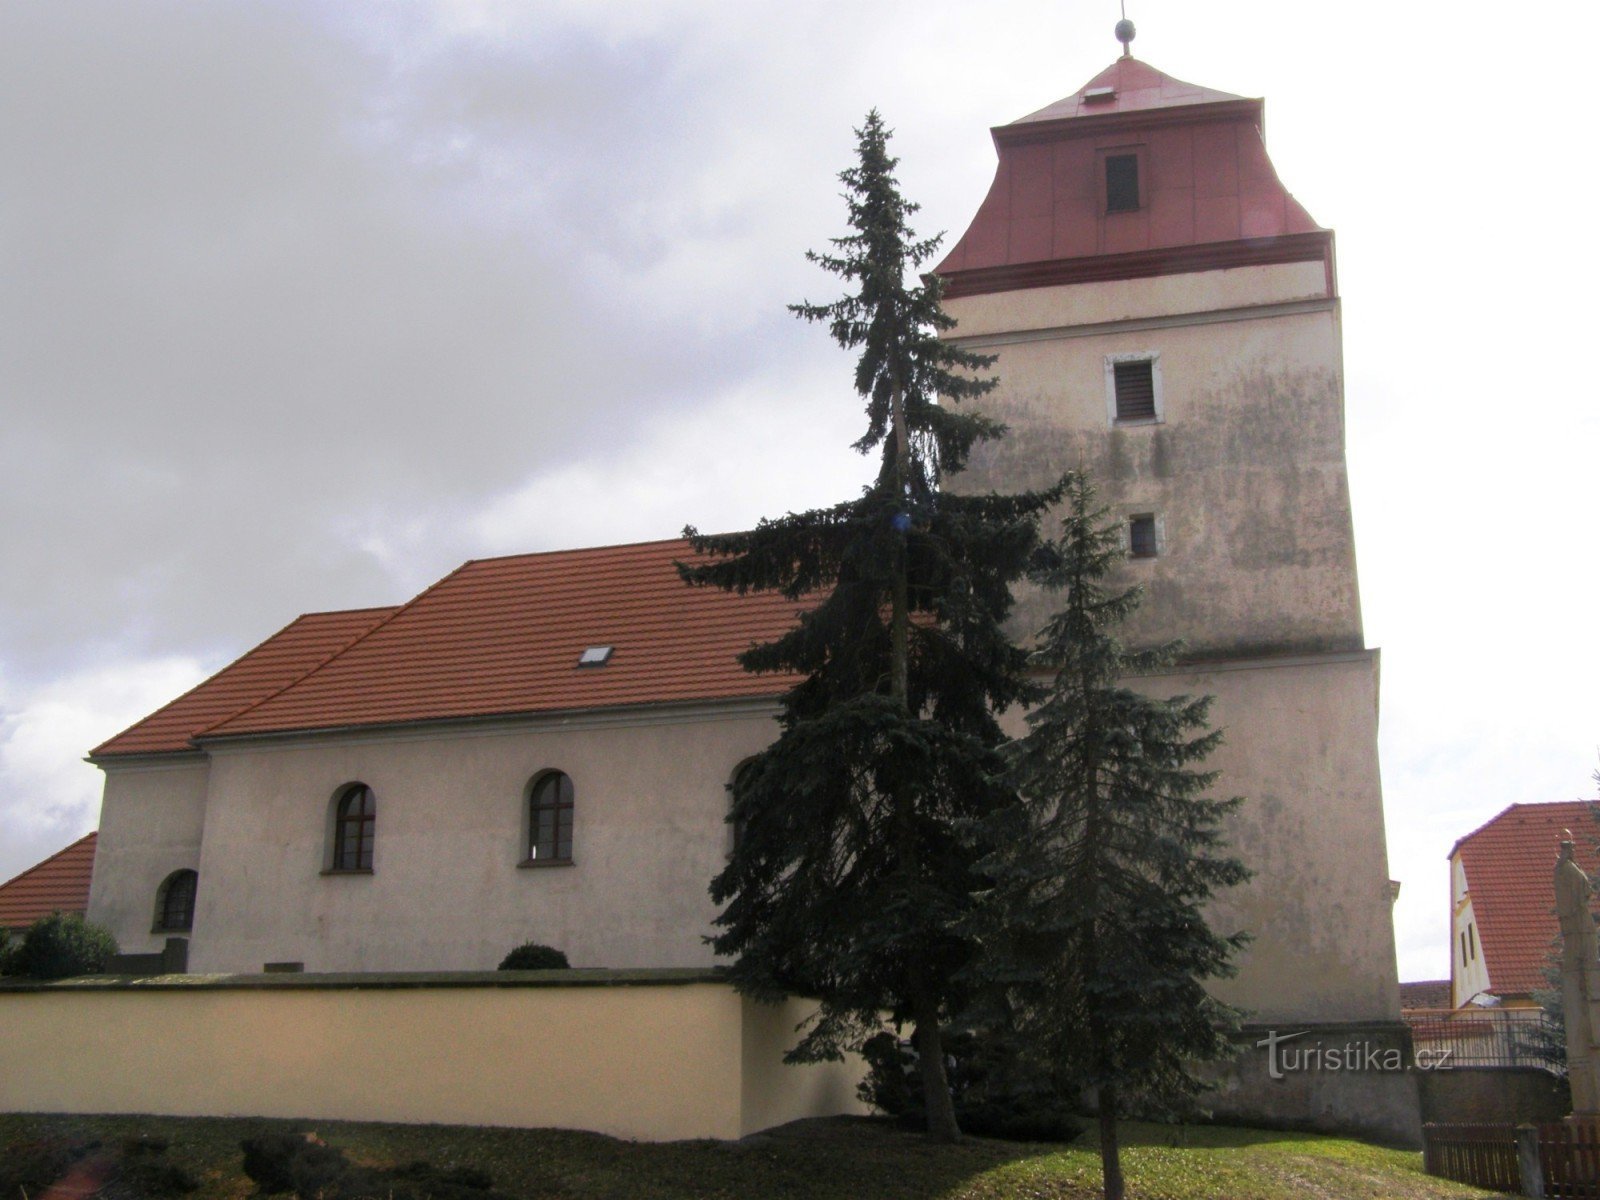 Libřice - kerk van St. Michaela